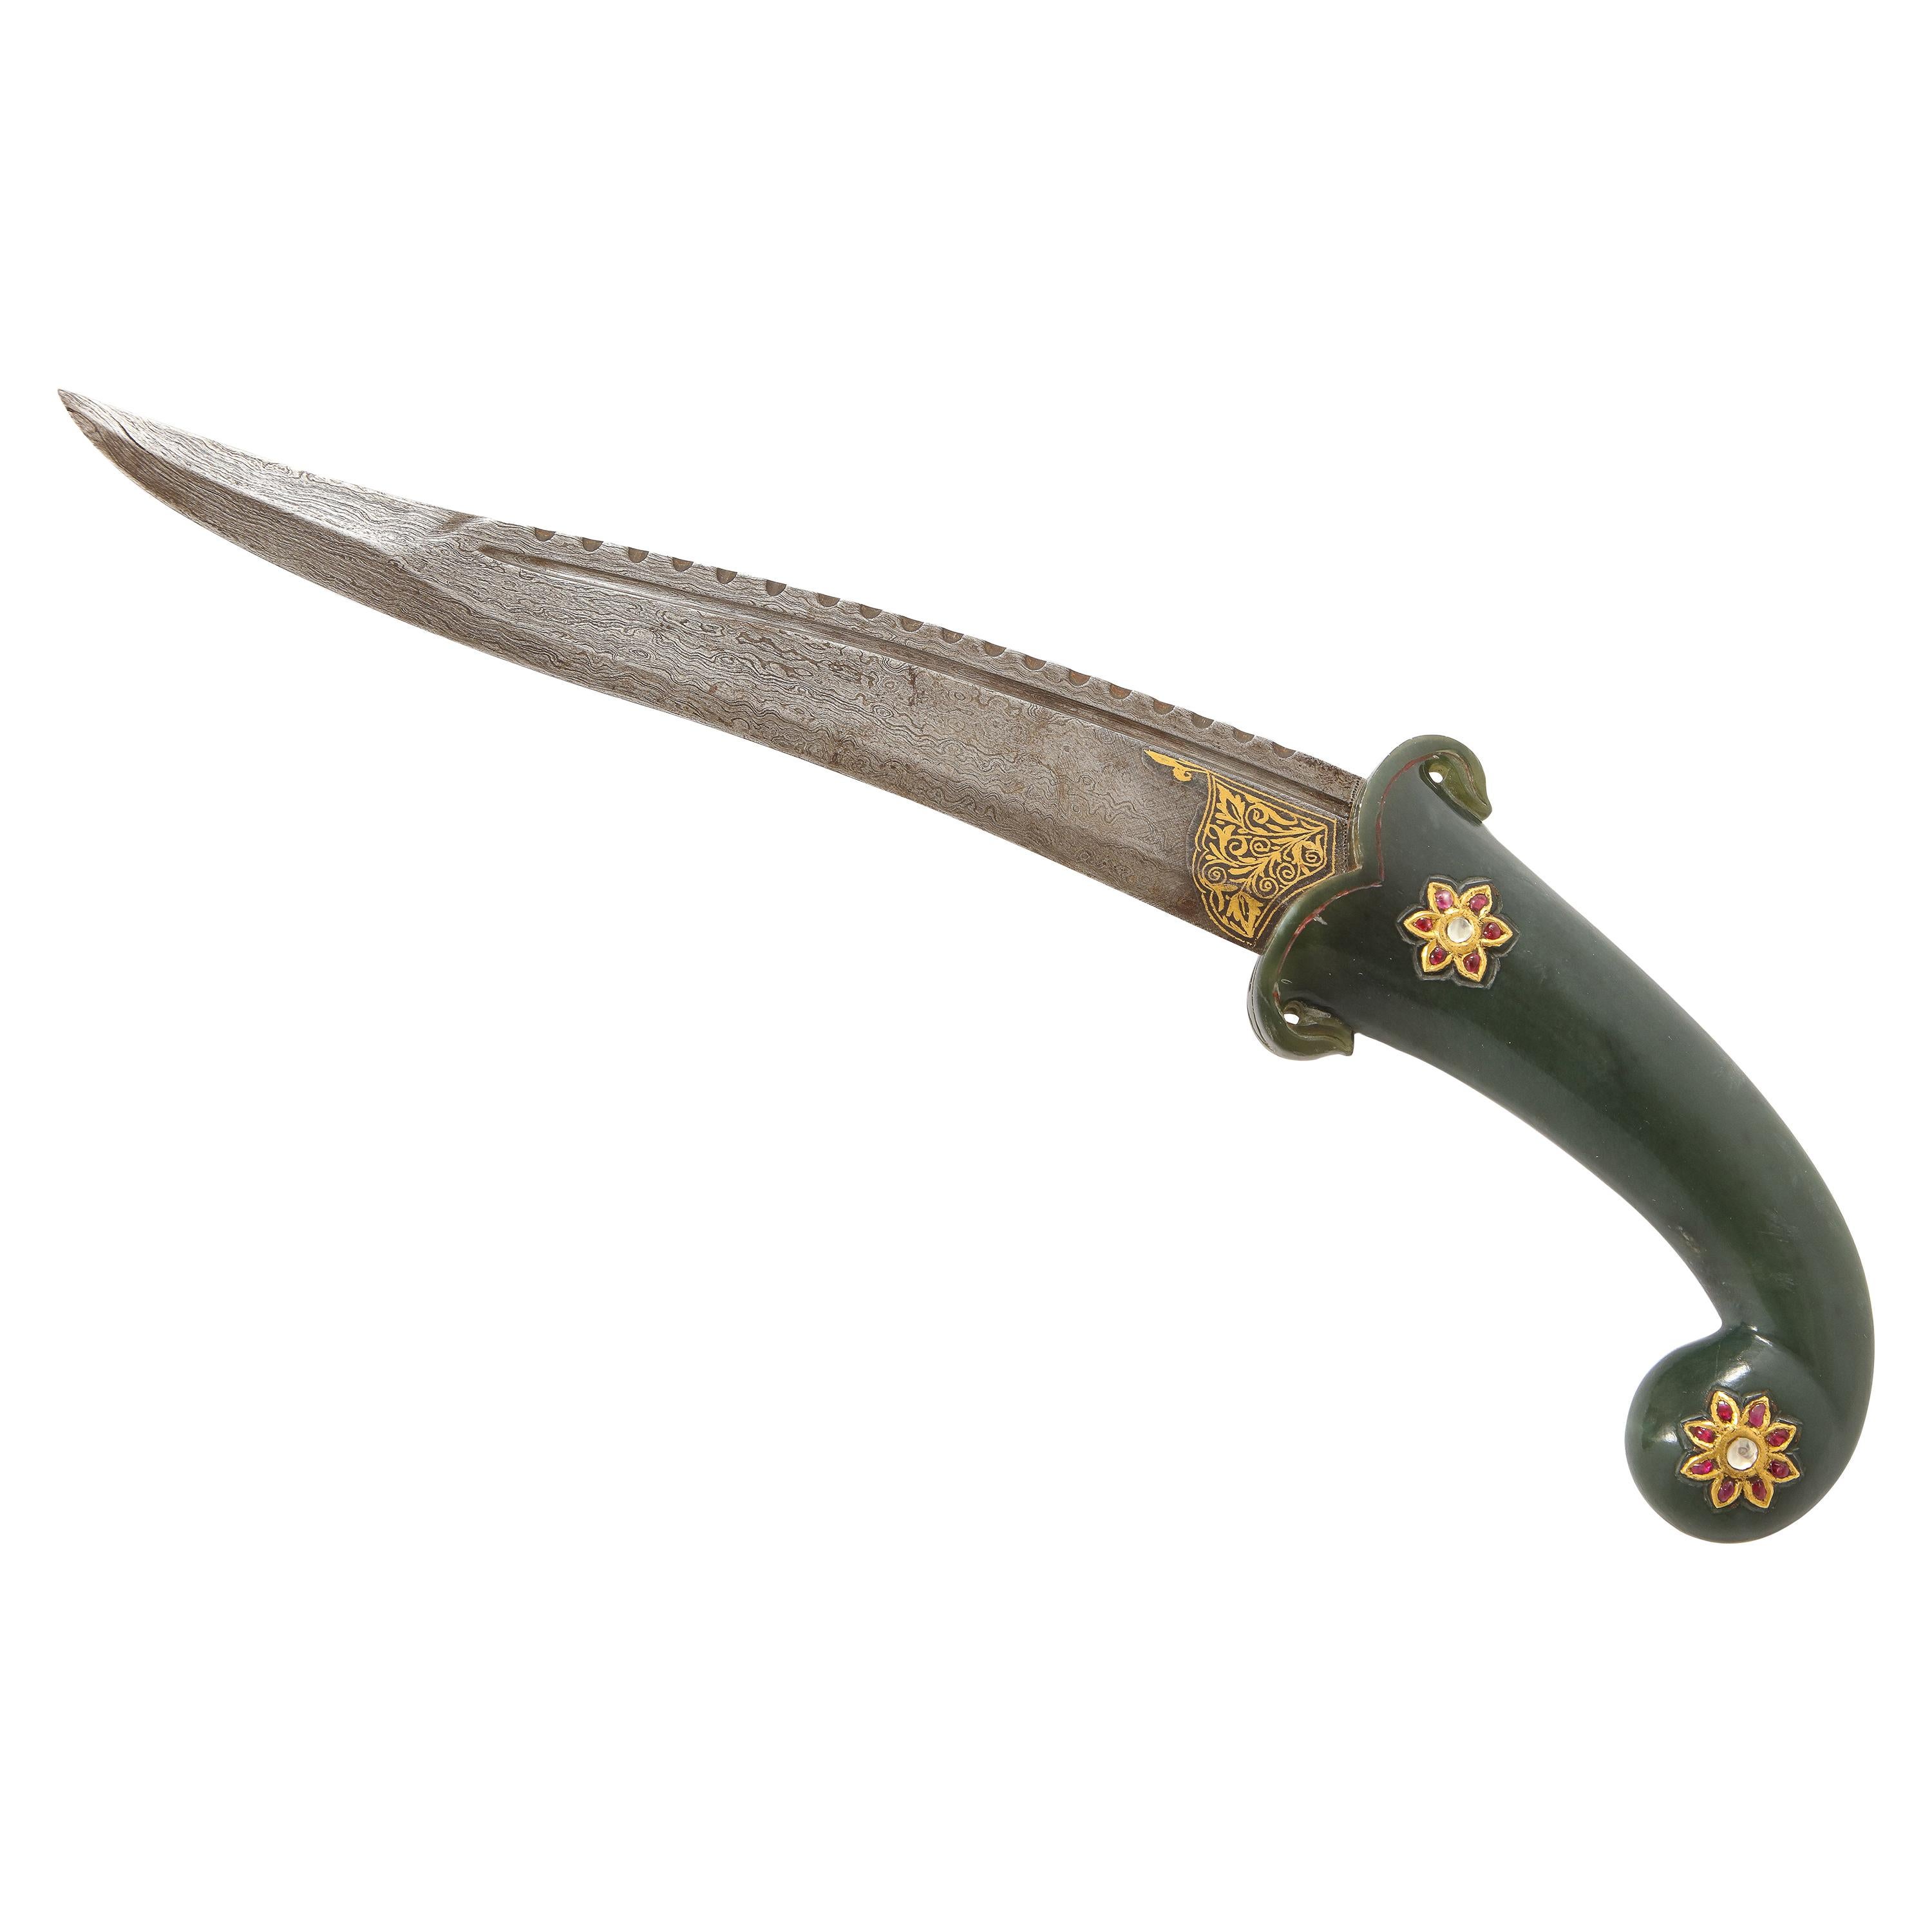 Dague en jade incrustée d'or et de pierres précieuses de la Dynasty moghole des XVIIIe et XIXe siècles